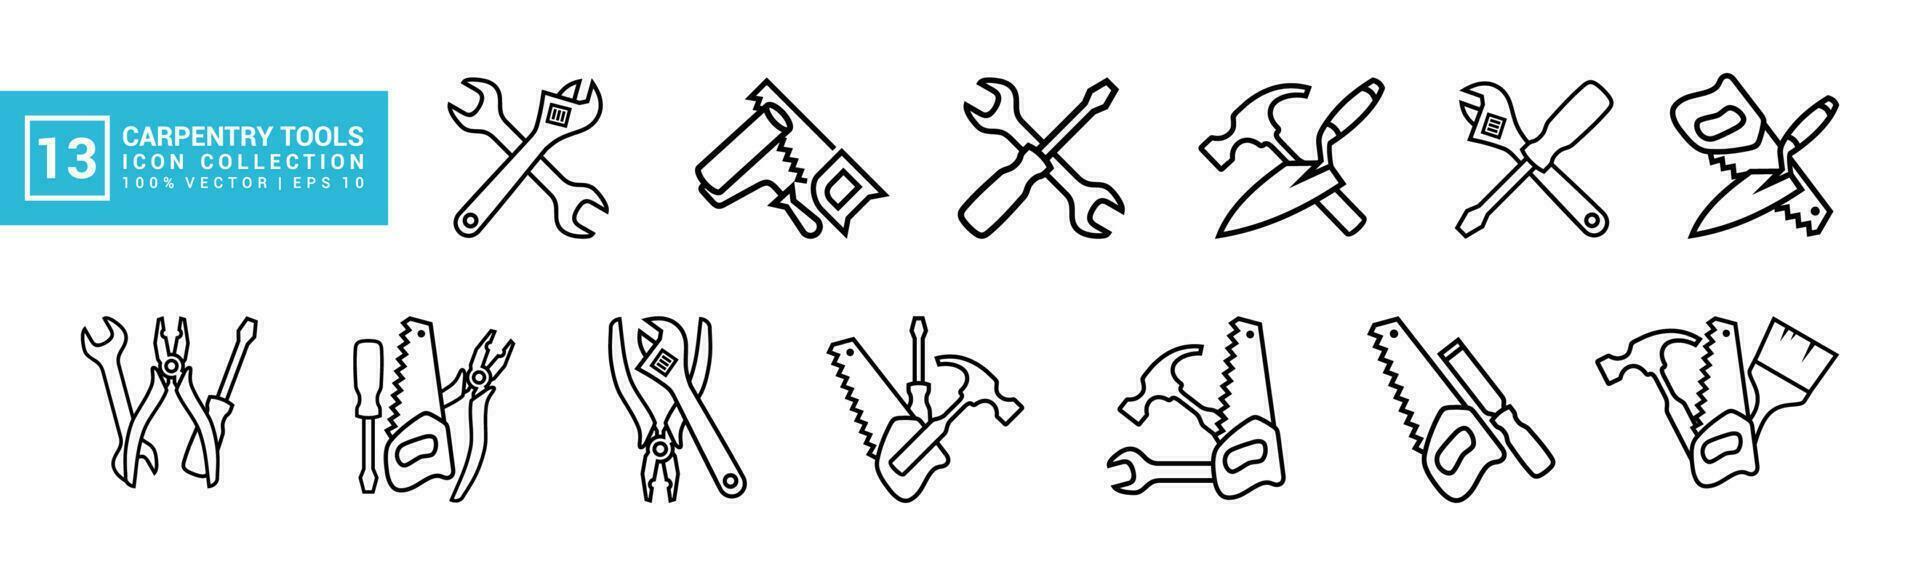 uppsättning av ikoner relaterad till snickeri verktyg, olika målning verktyg, snickare ikon mallar, mekaniker ikoner redigerbar och resizable eps 10 vektor